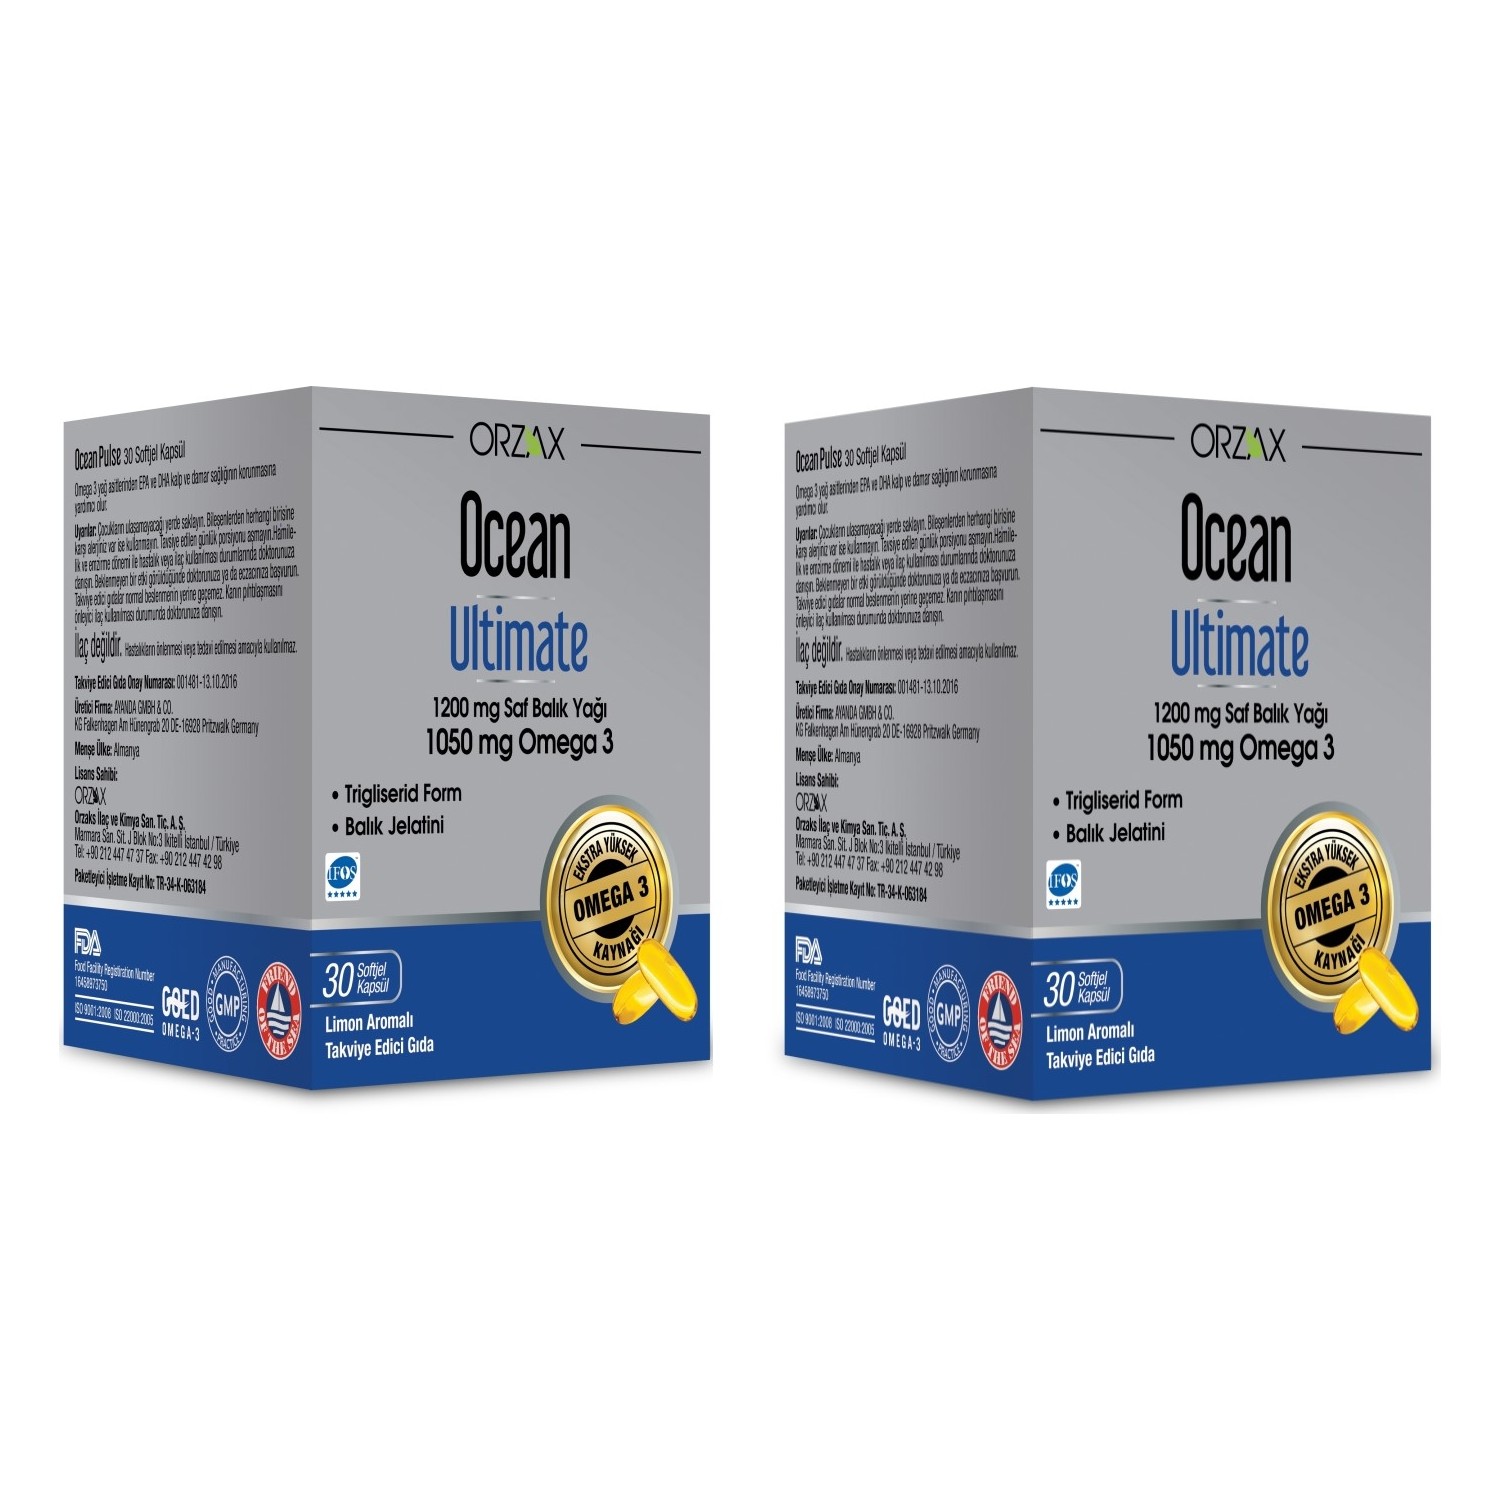 цена Омега-3 Ocean Ultimate 1050 мг, 2 упаковки по 30 капсул